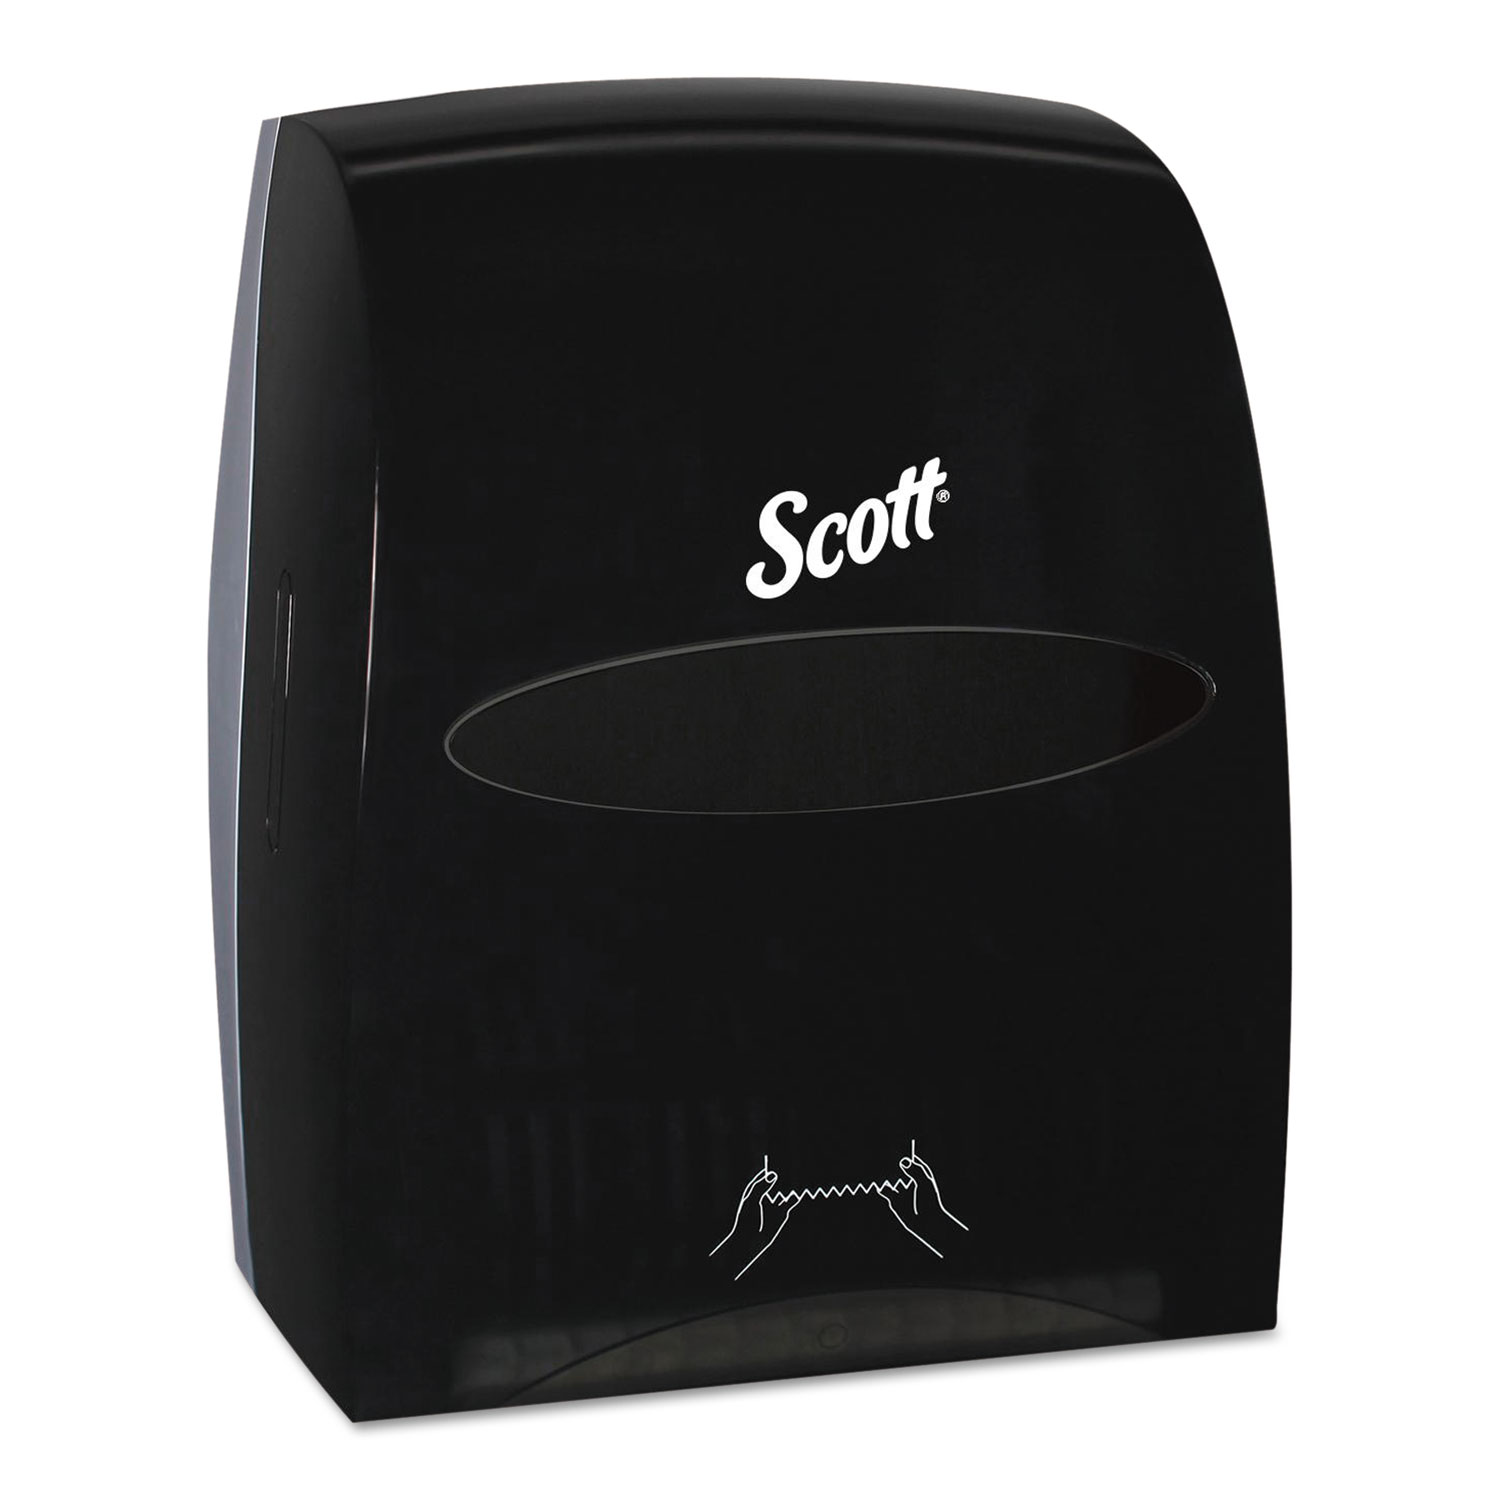  Scott 46253 Essential Manual Hard Roll Towel Dispenser, 13.06 x 11 x 16.94, Black (KCC46253) 